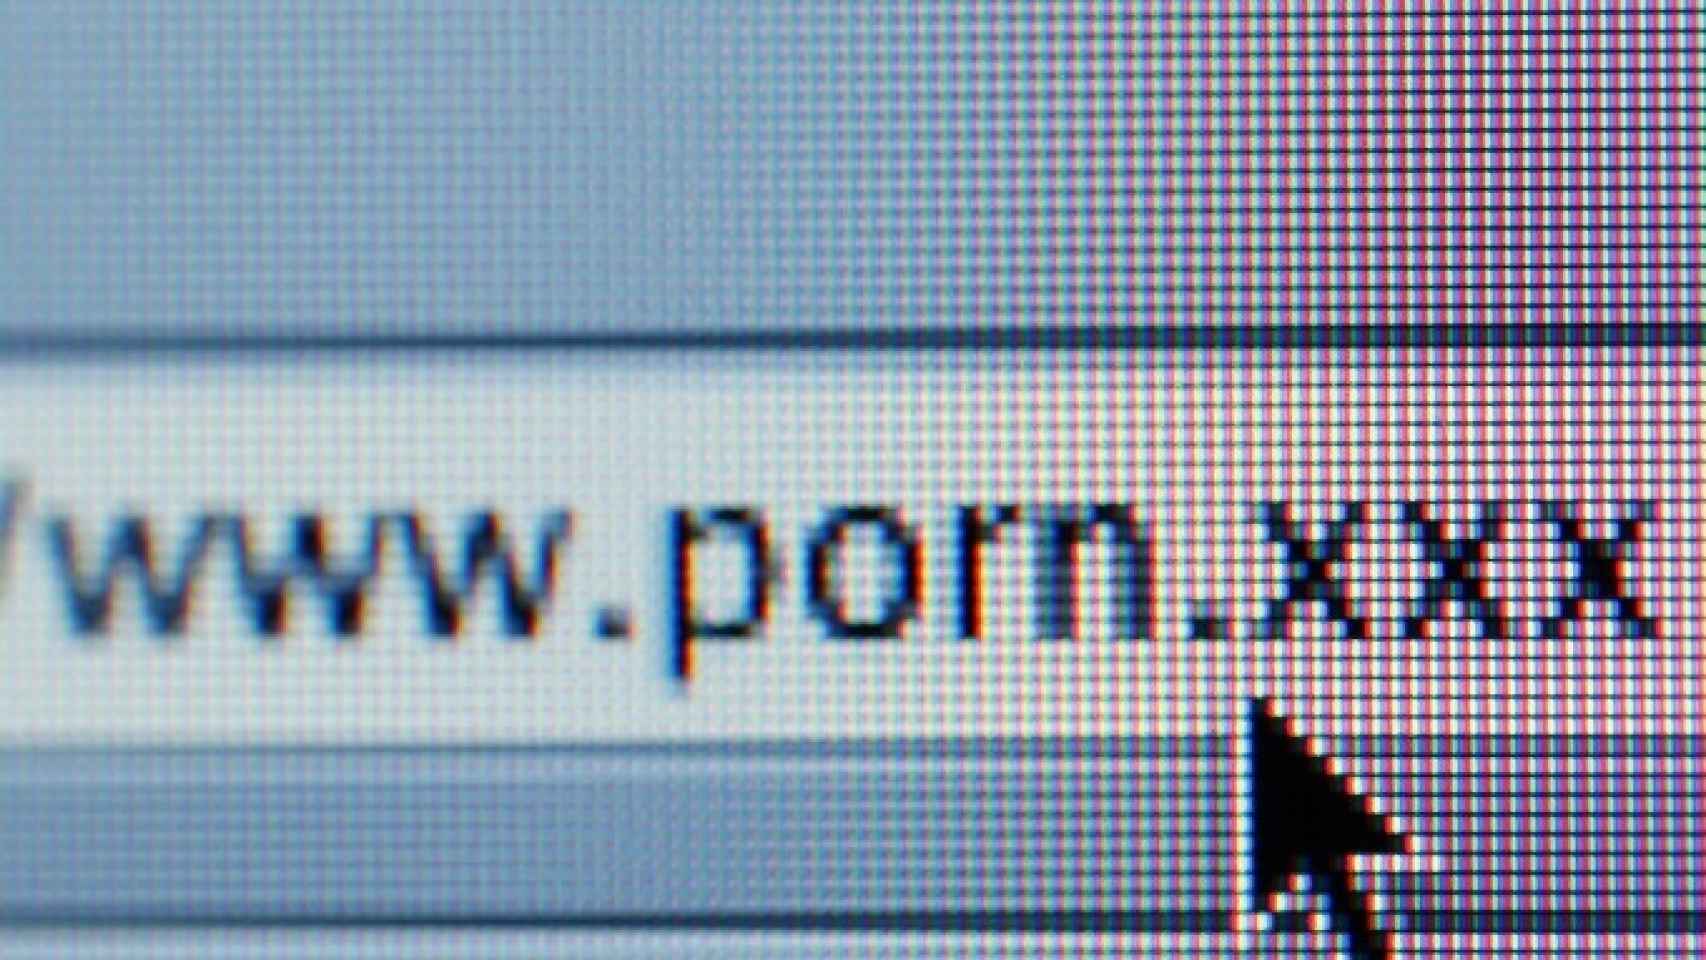 Wwwpornxxx Com - El Reino Unido tendrÃ¡ que desbloquear pÃ¡ginas incluidas injustamente en el  filtro anti-porno